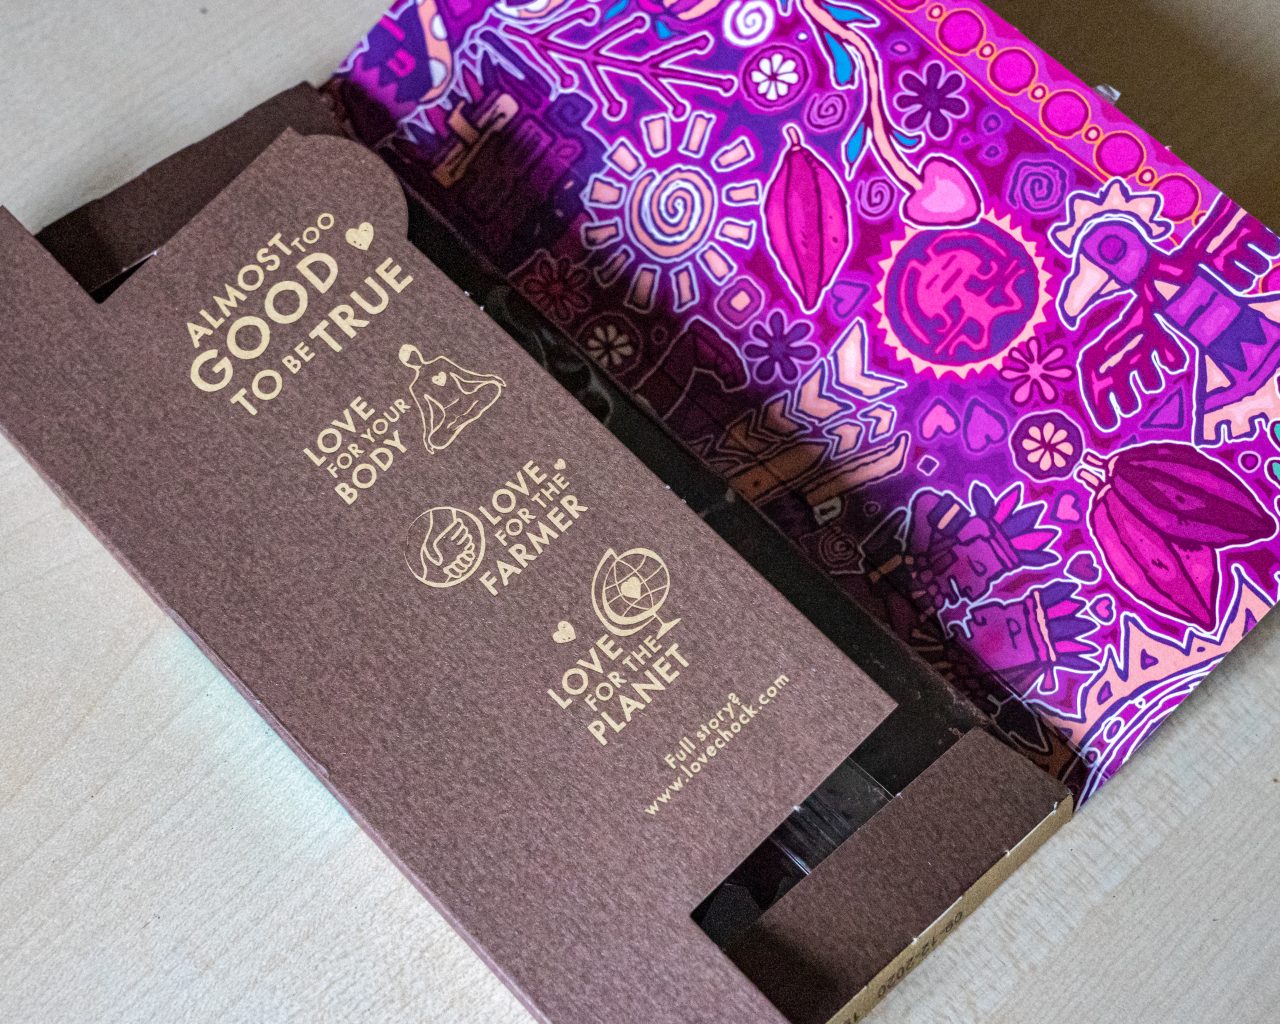 Lovechock-fairtrade-chocolade-binnenkant-verpakking